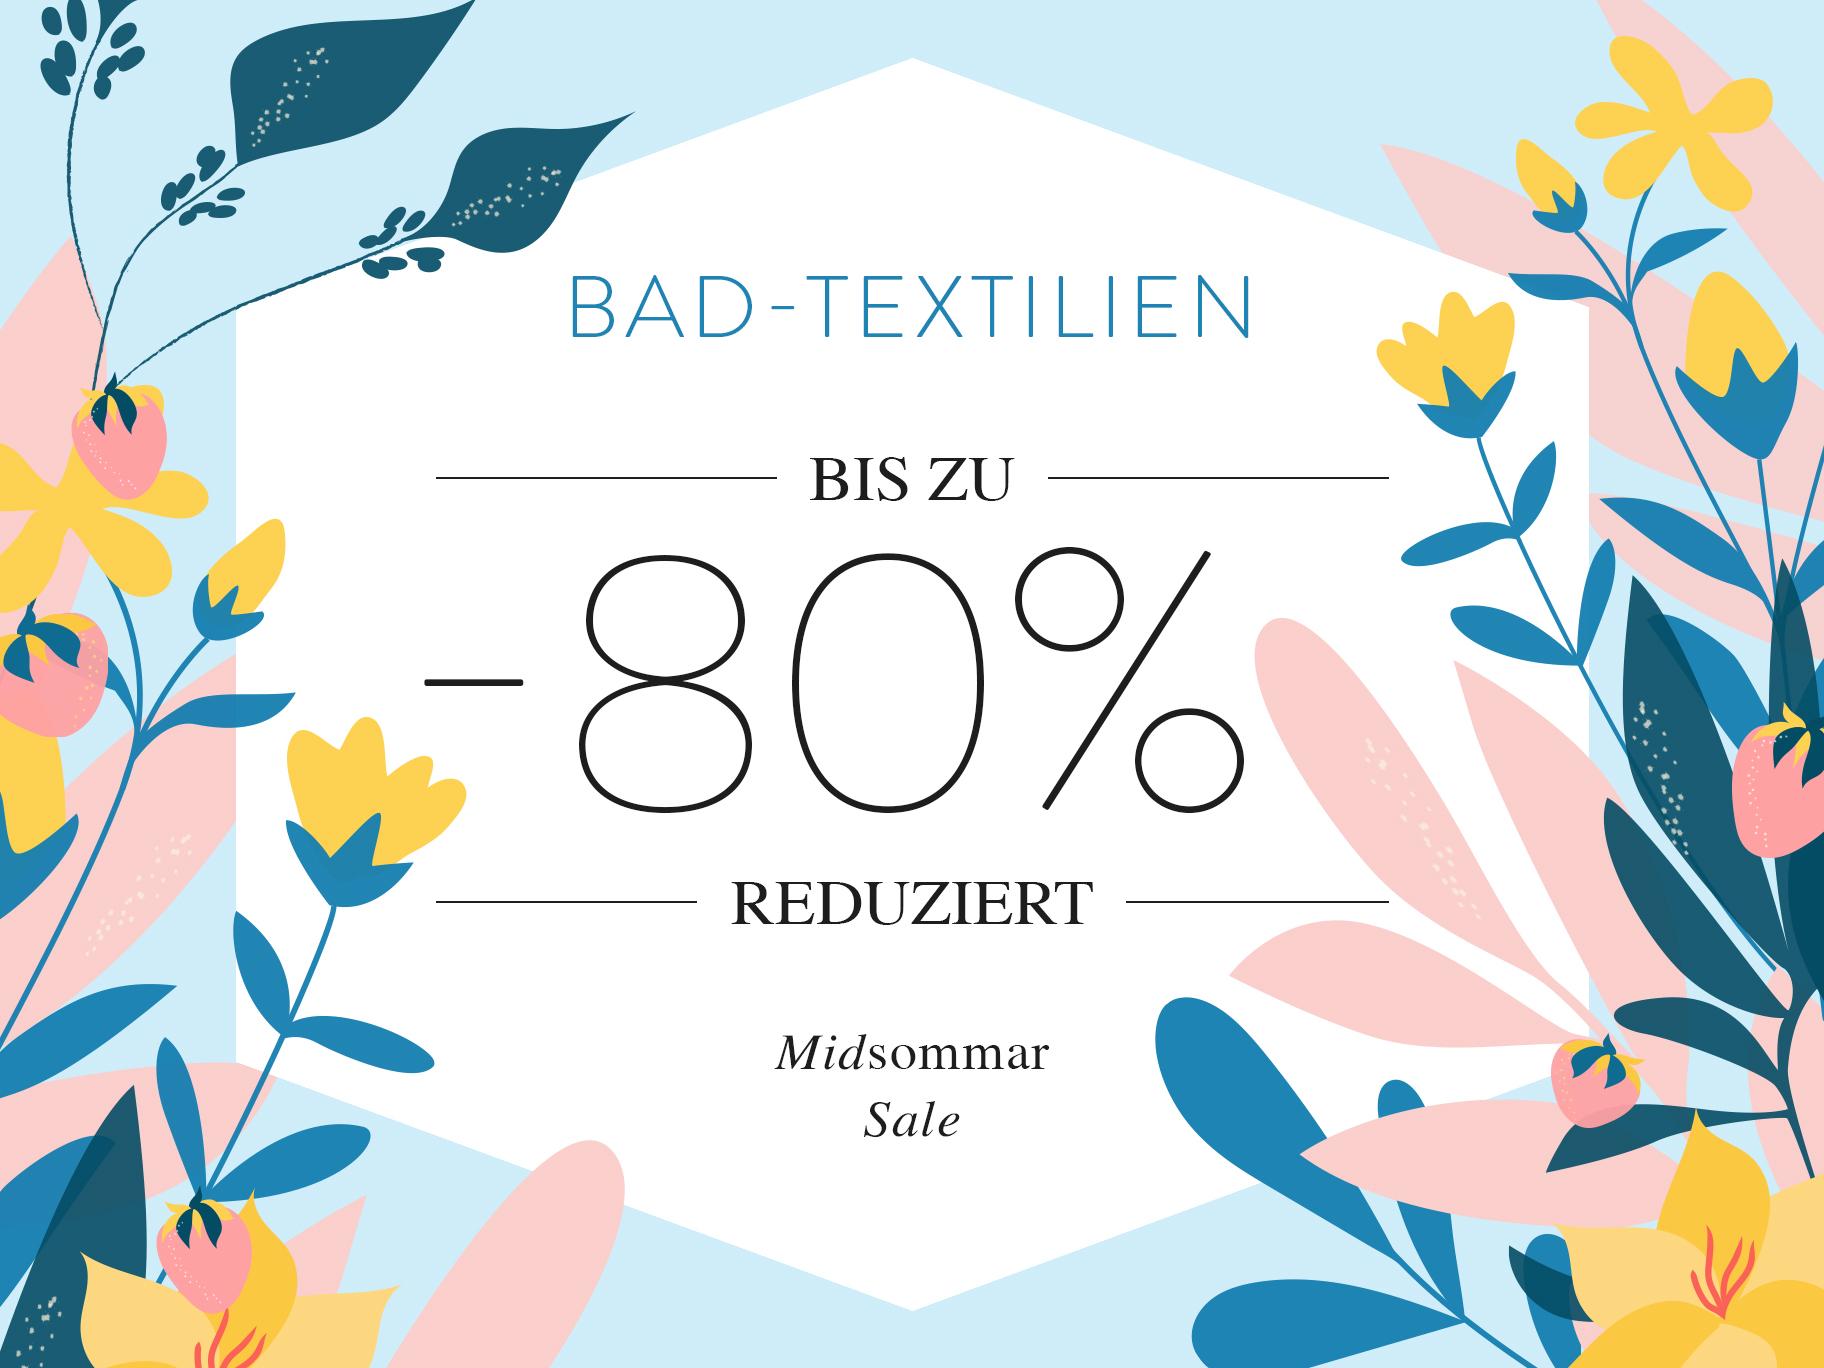 Bad-Textilien